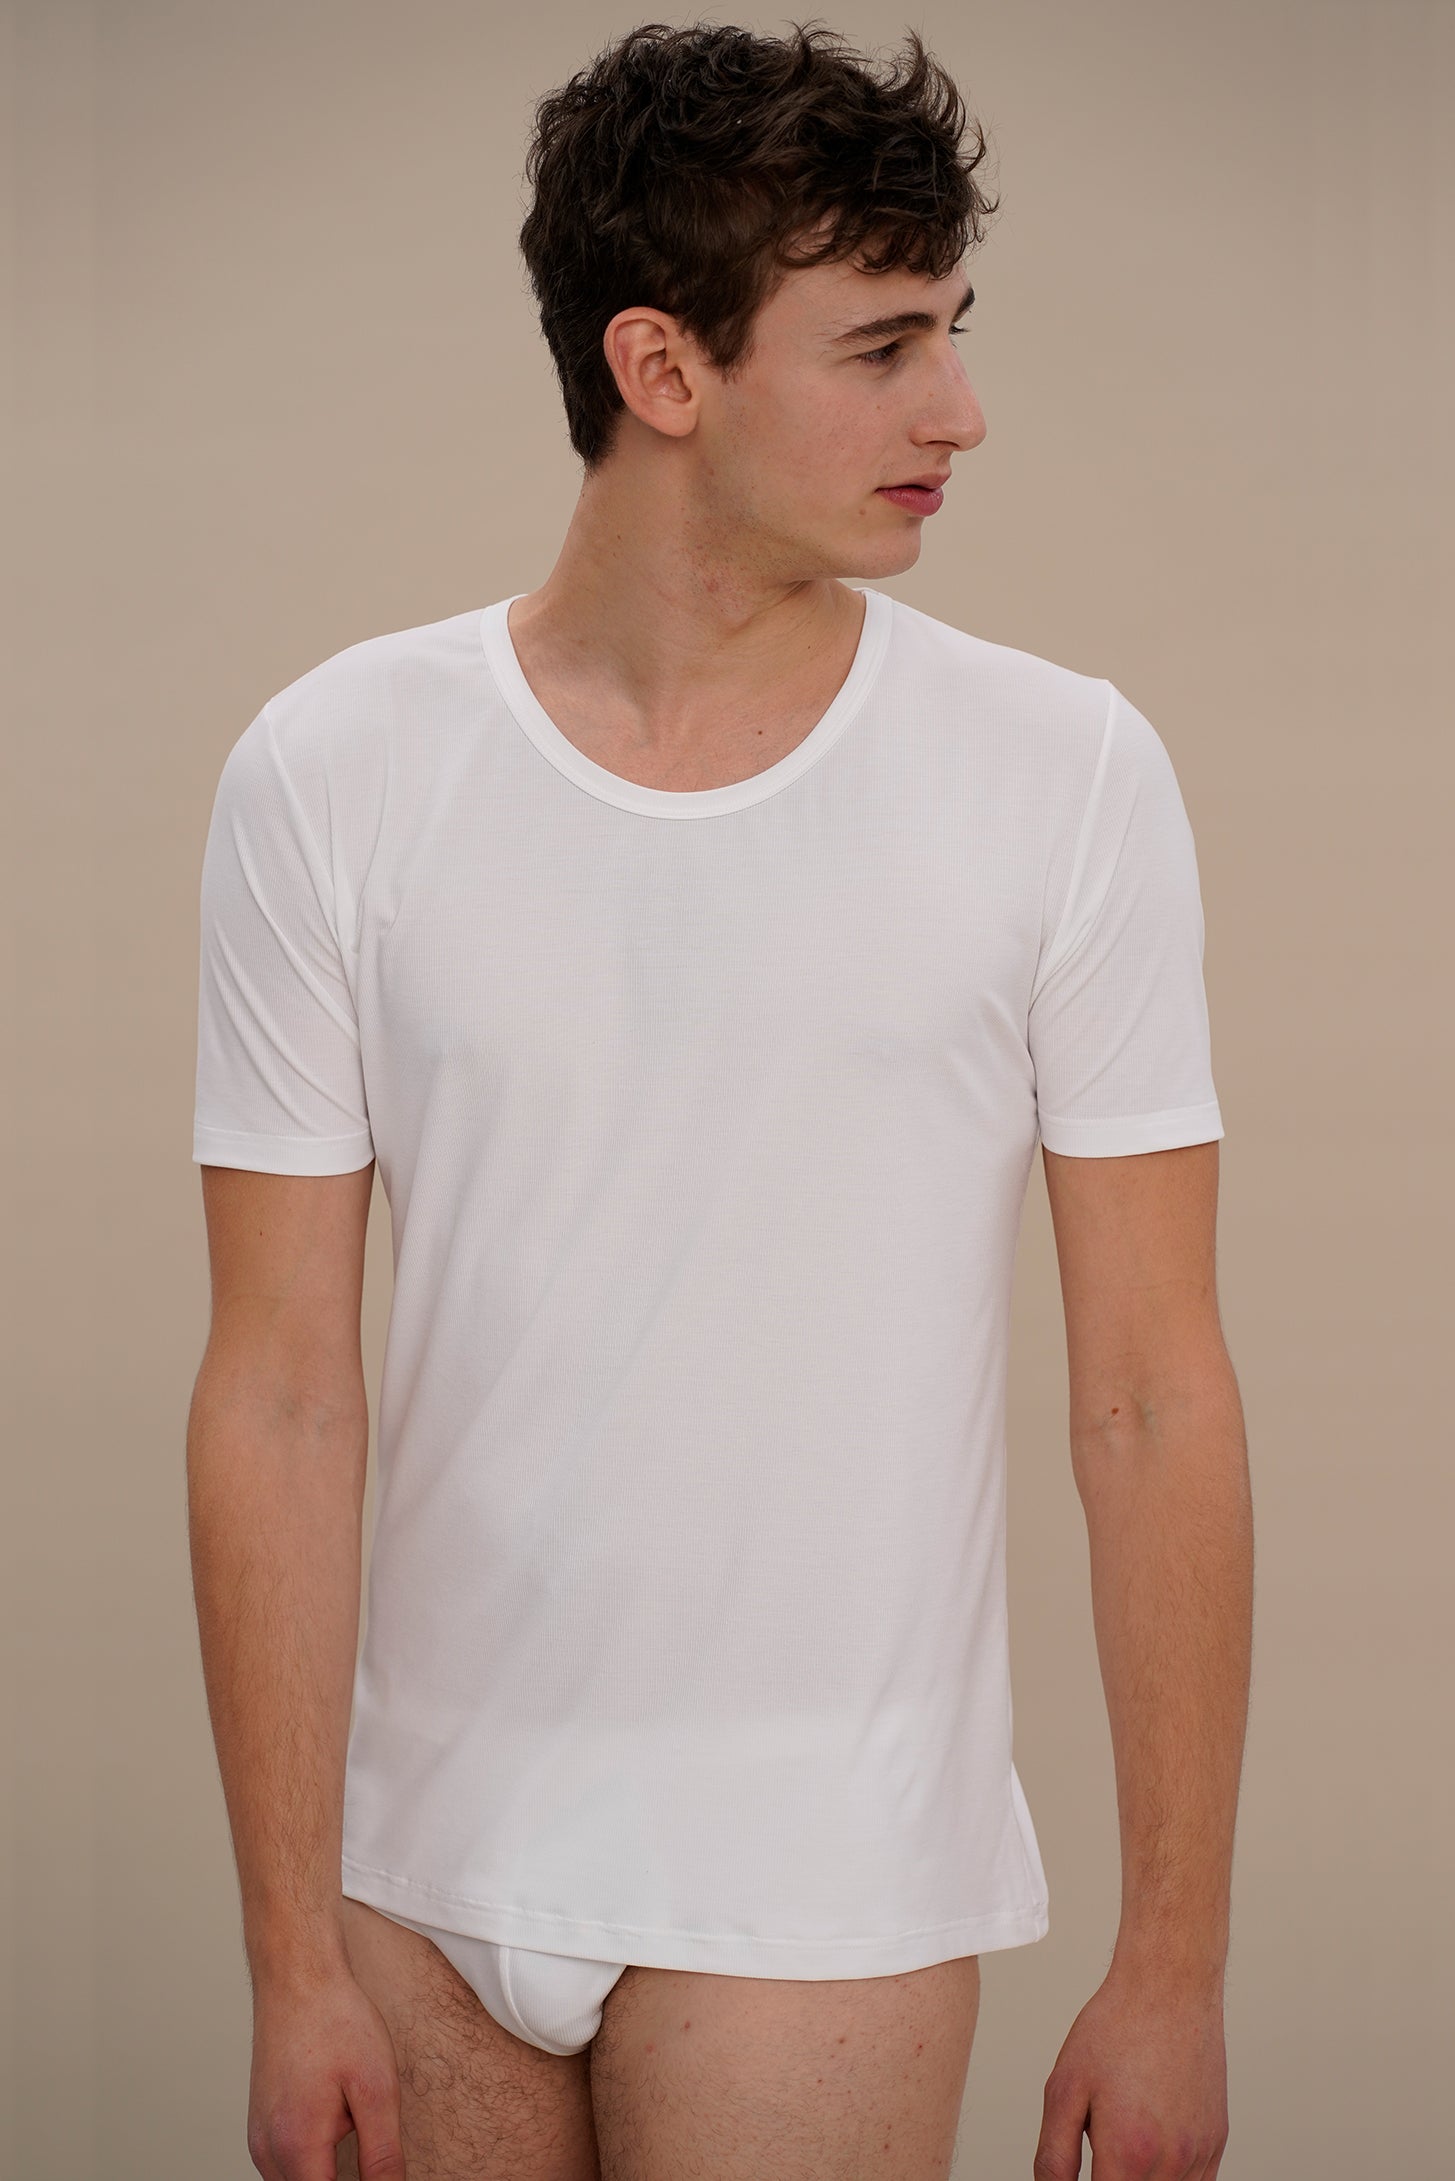 T-Shirt / Unterhemd in weiss aus natürlichem MicroModal von moi-basics